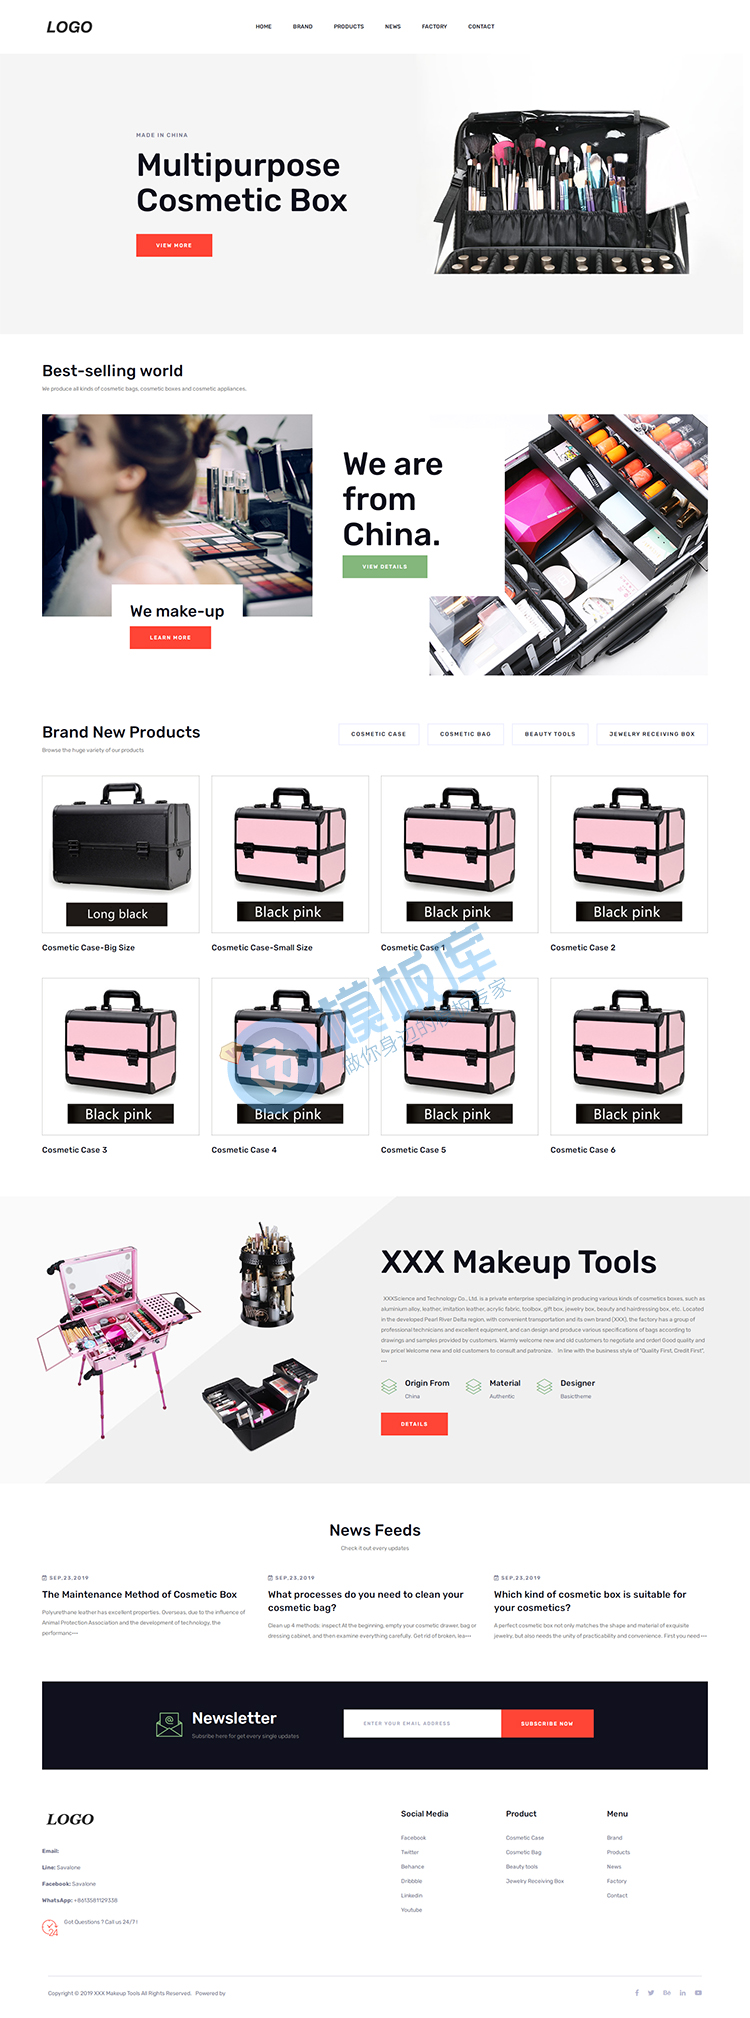 China XXX Technology Co., Ltd.-XXX.jpg